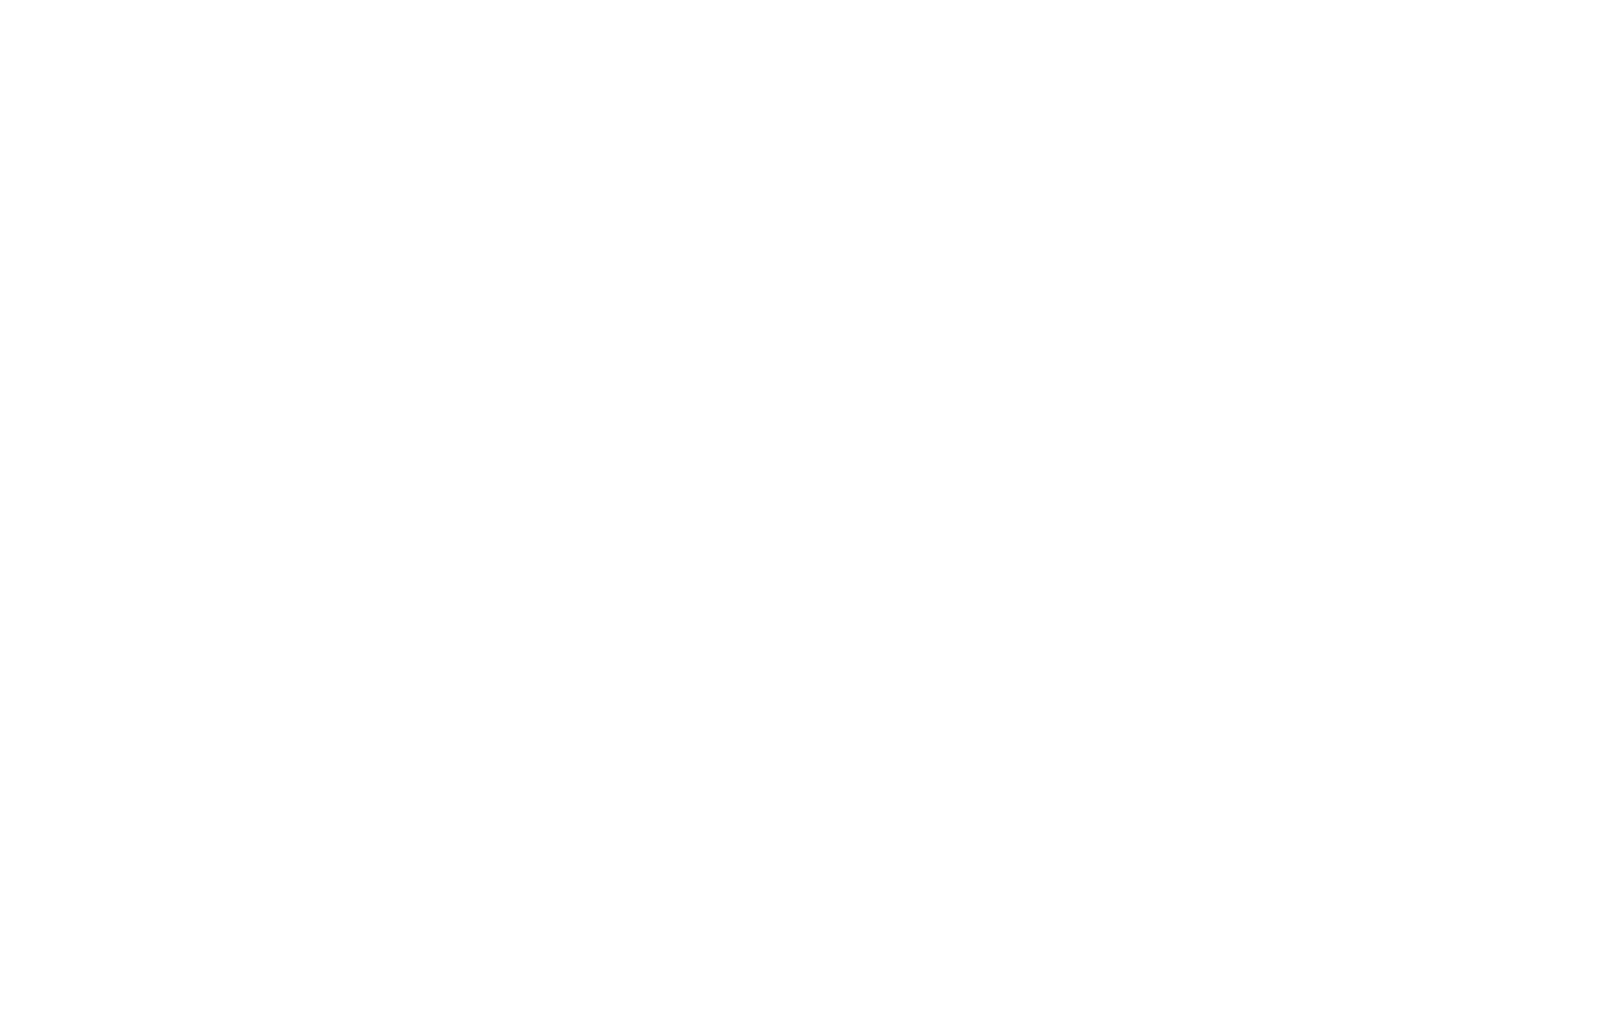 Starbox Group Logo groß für dunkle Hintergründe (transparentes PNG)